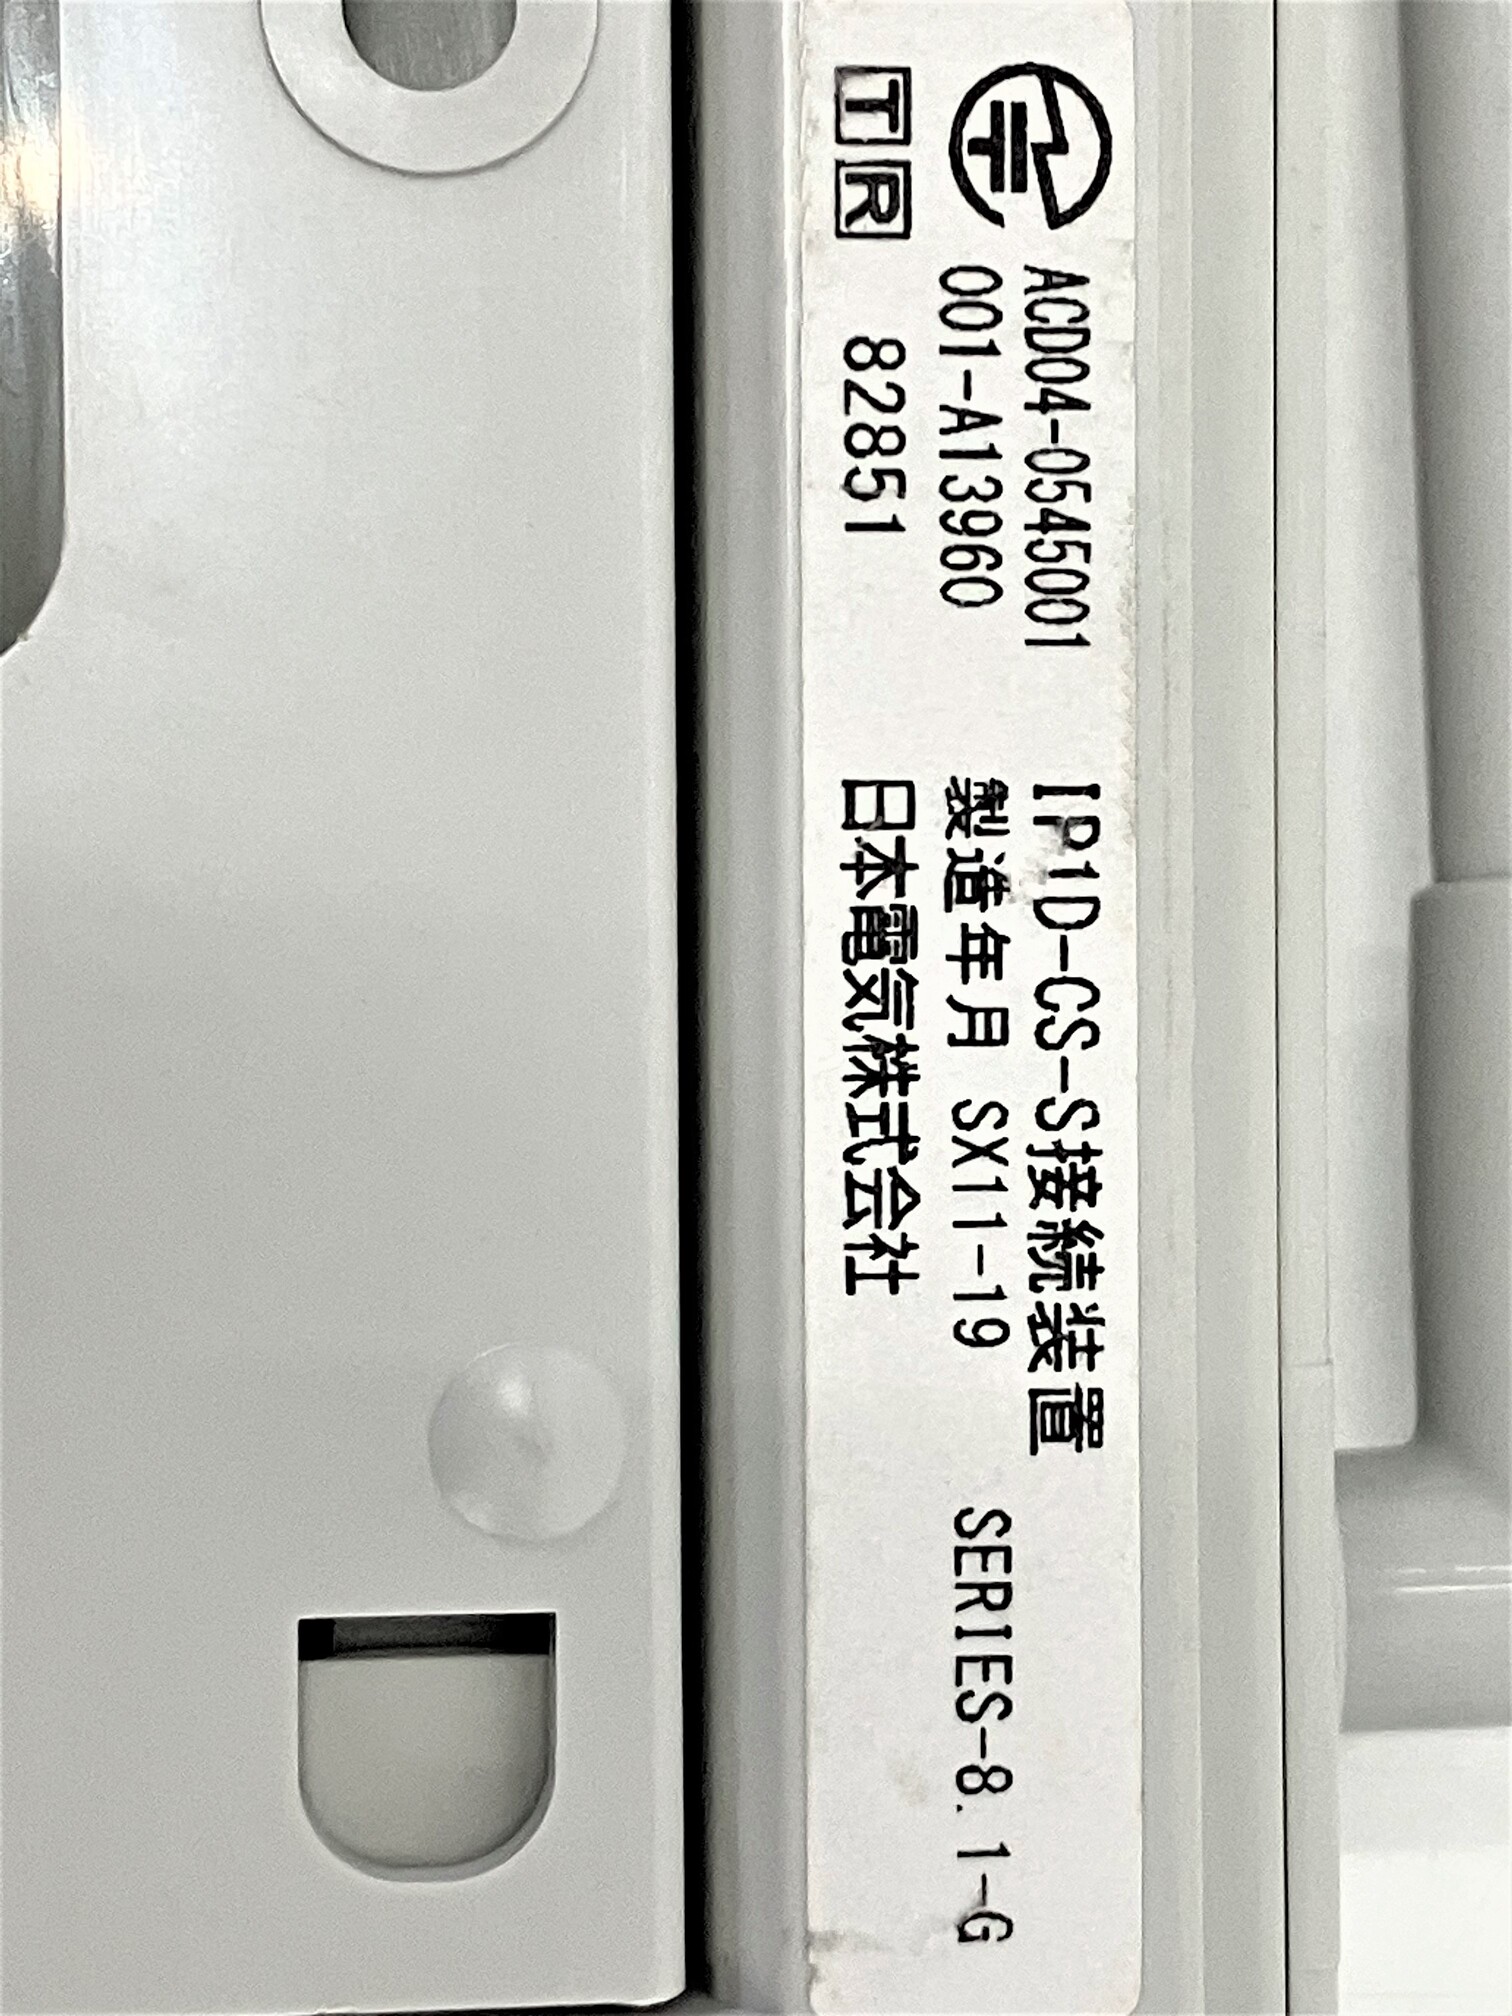 IP8D-SZCL-3 NEC製 AspireWX シングルゾーンコードレス電話機-ビジフォン舗